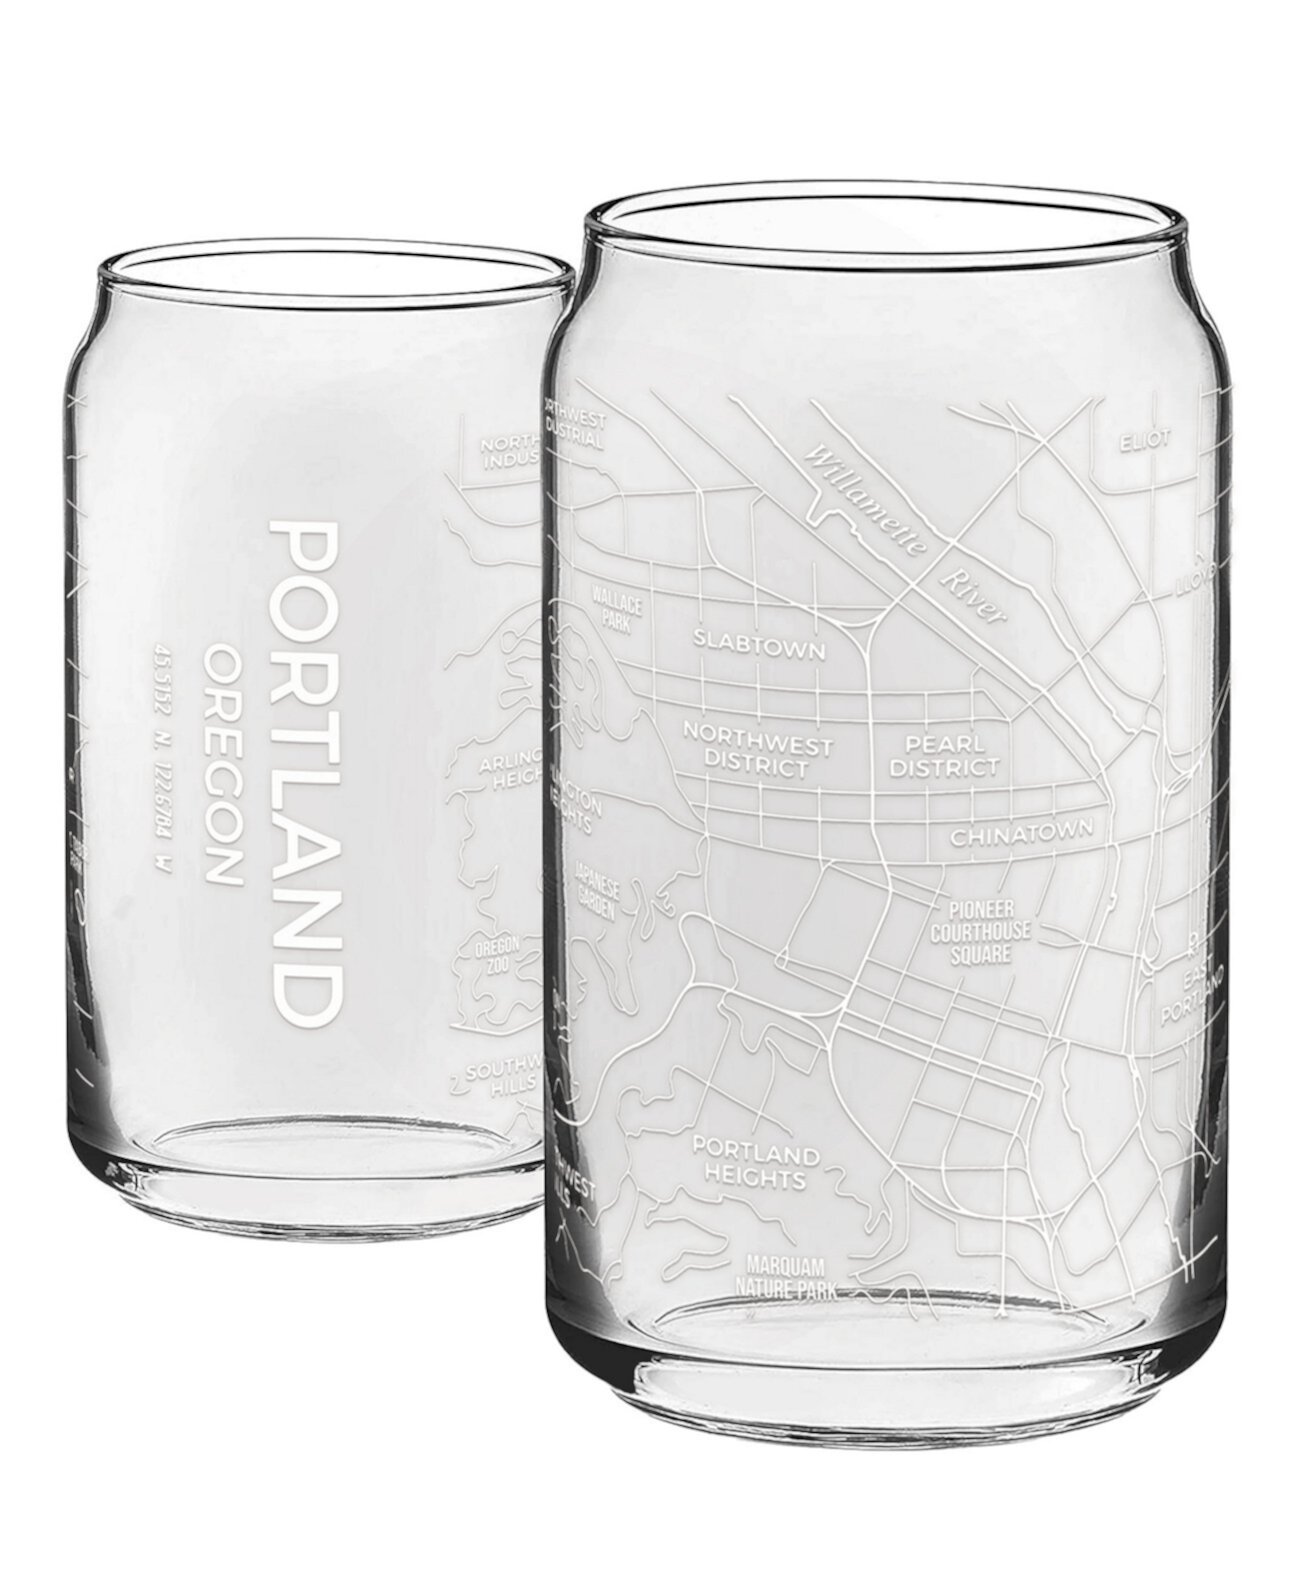 THE CAN Portland Or Map 16 унций стеклянной посуды на каждый день, набор из 2 шт. NARBO